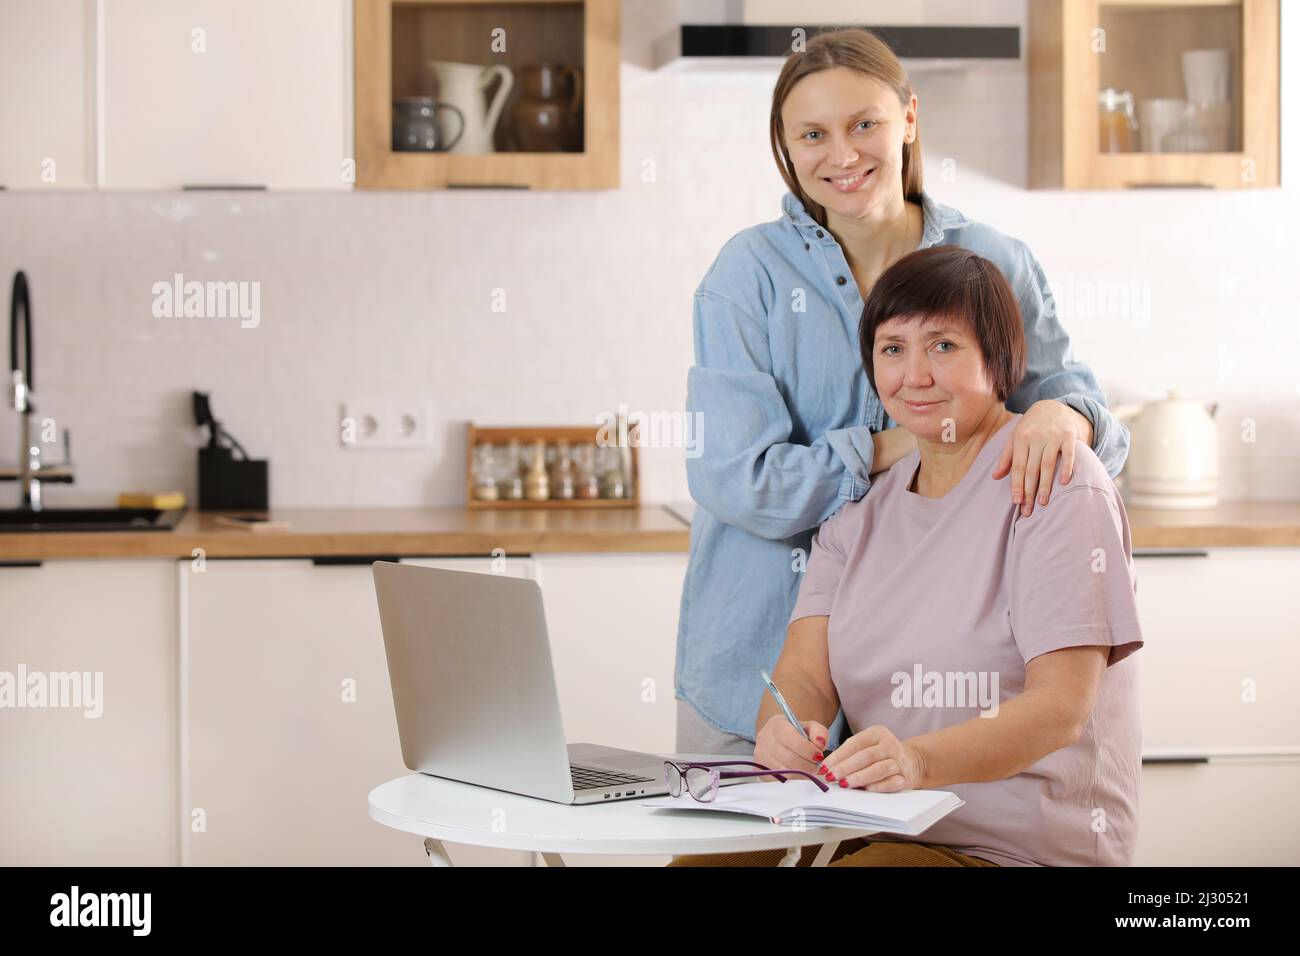 Junge Frau, die ältere Mutter lehrt, das Internet auf dem Laptop zu Hause zu nutzen. Tochter hilft ihrer älteren Mutter, es online mit ihrem persönlichen Konto herauszufinden Stockfoto